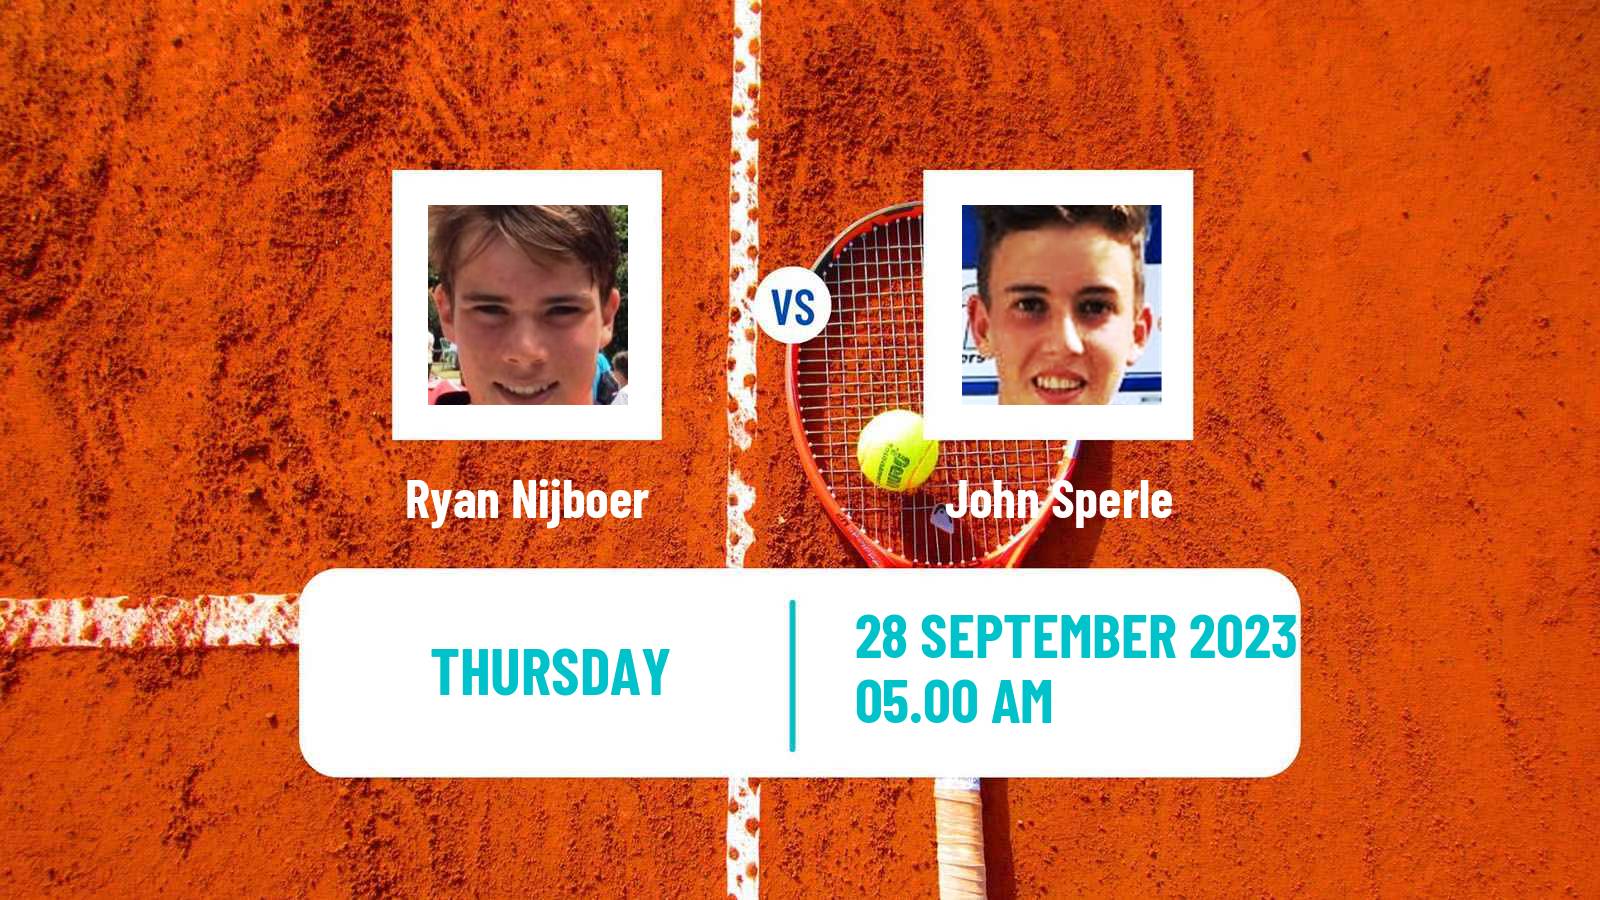 Tennis ITF M25 Sabadell 2 Men Ryan Nijboer - John Sperle